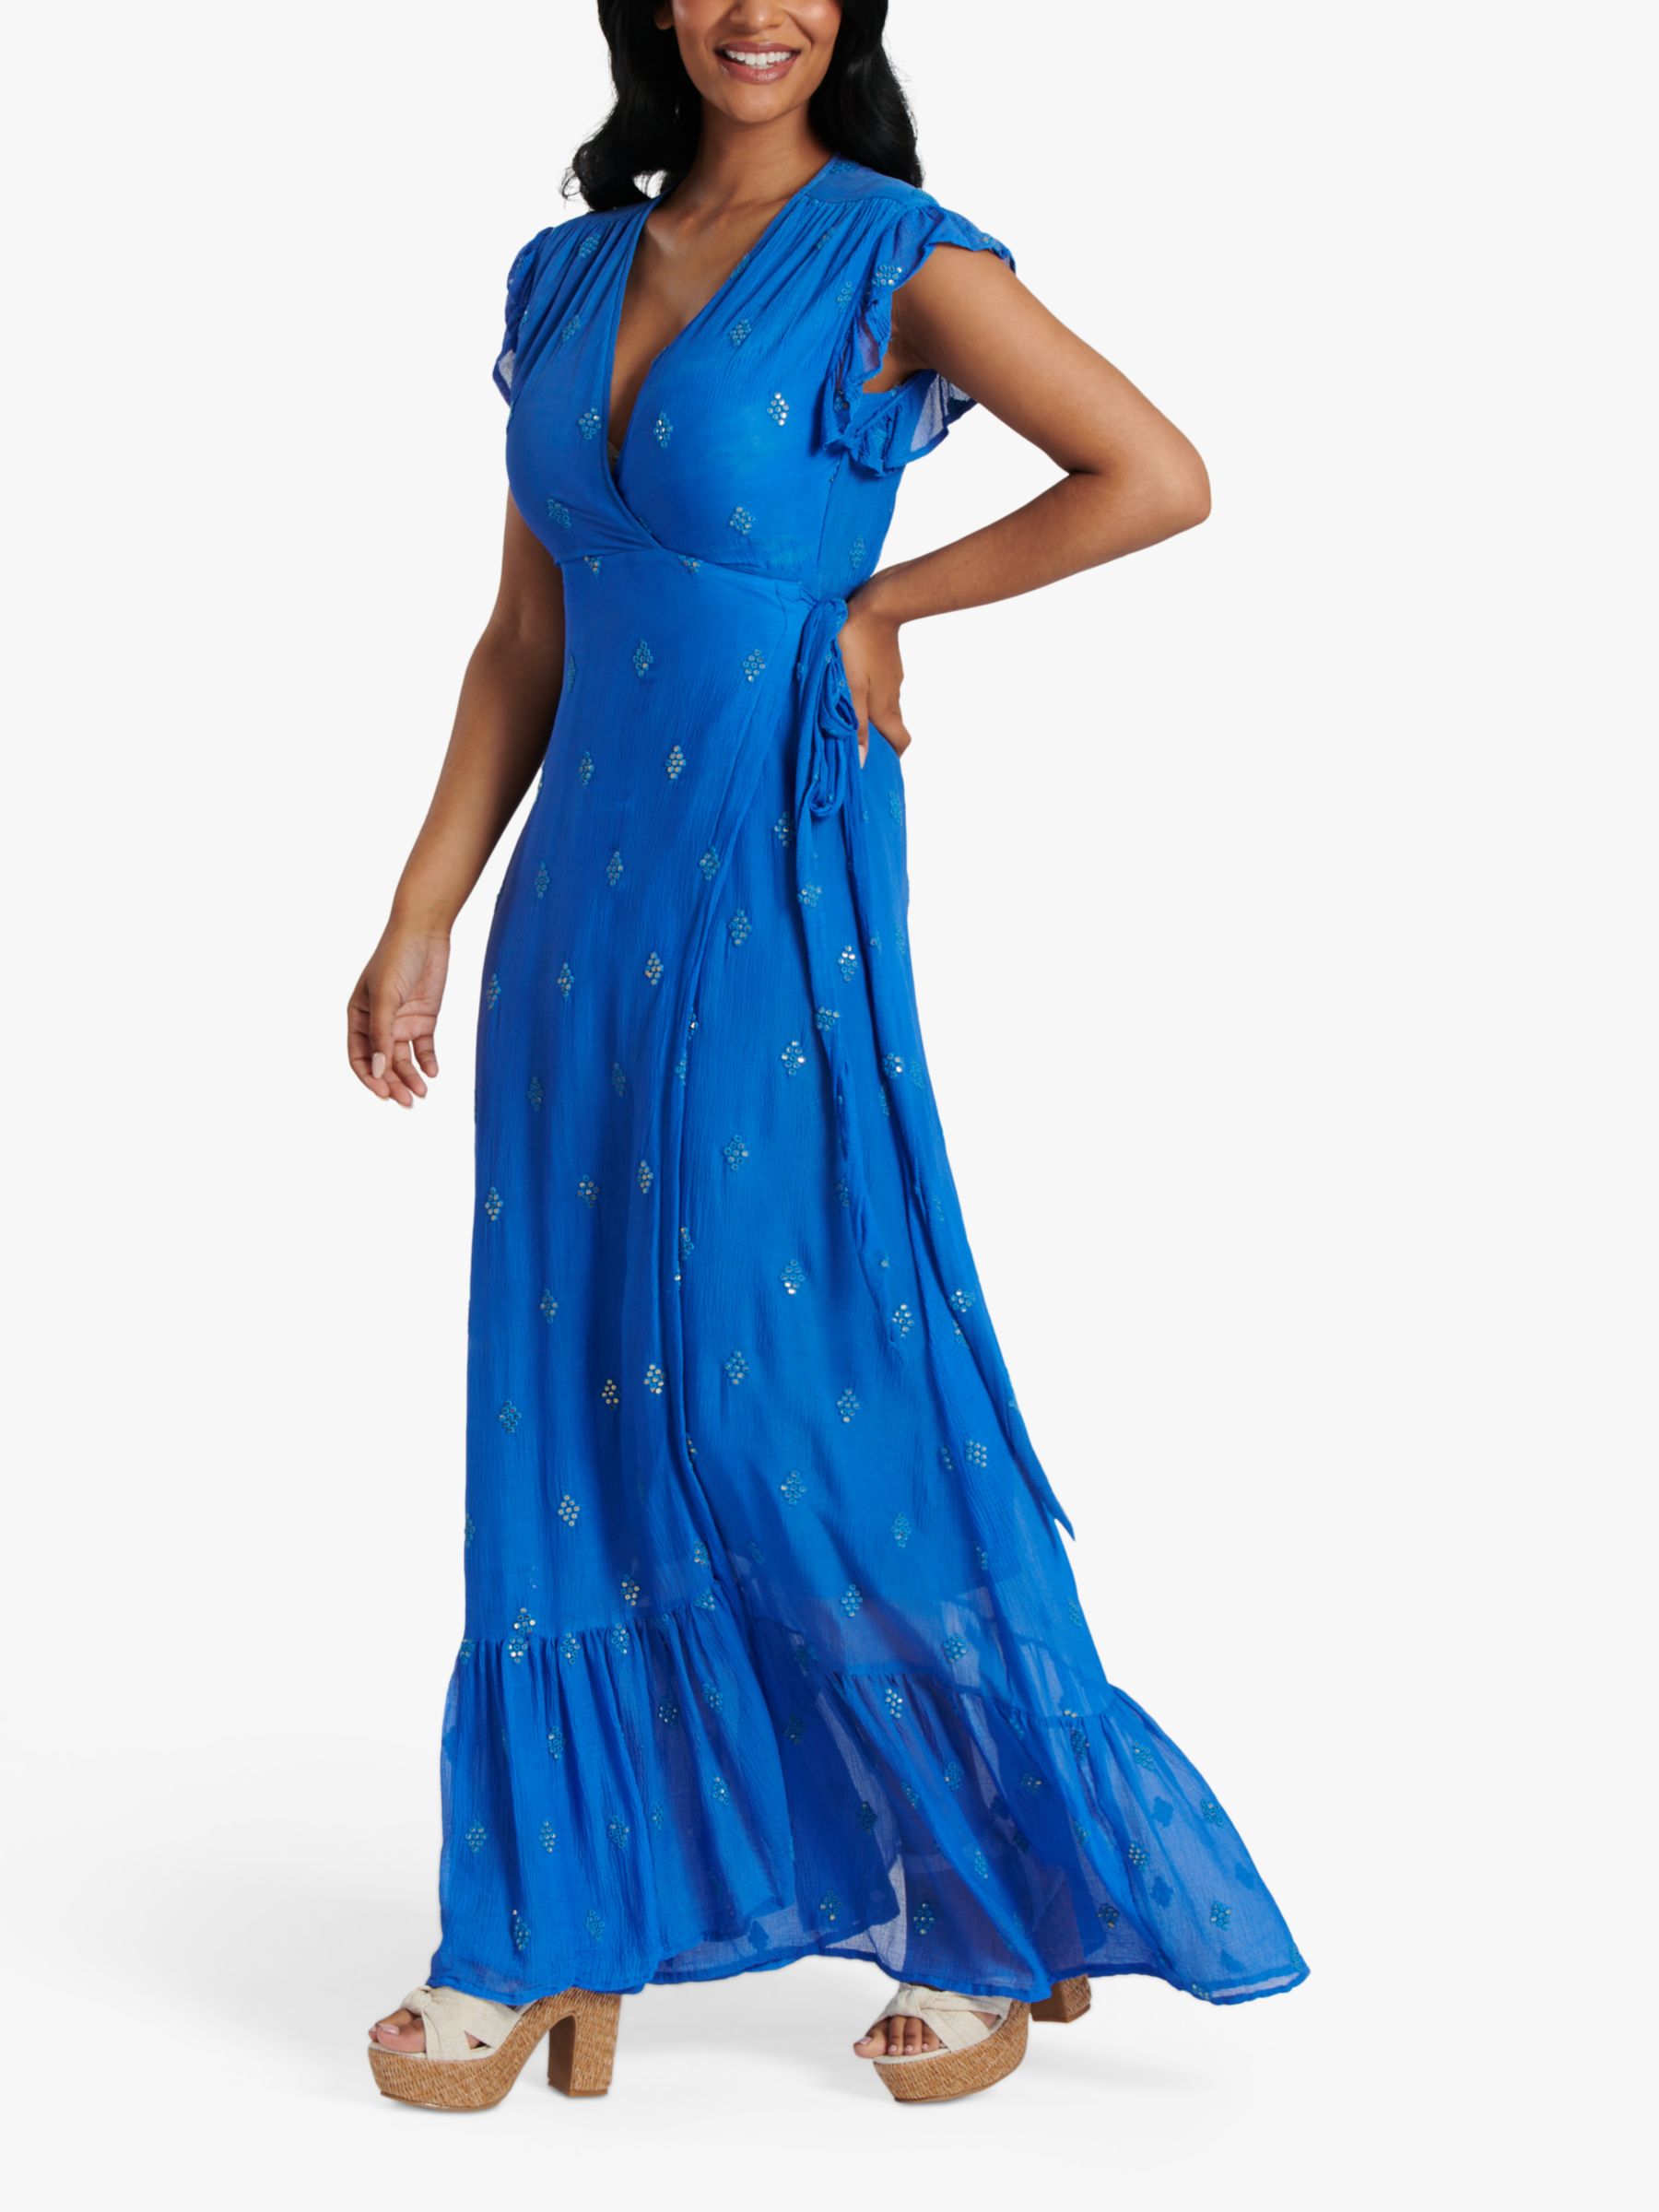 South Beach Sequin Detail Wrap Maxi Dress, Bright Blue, 8